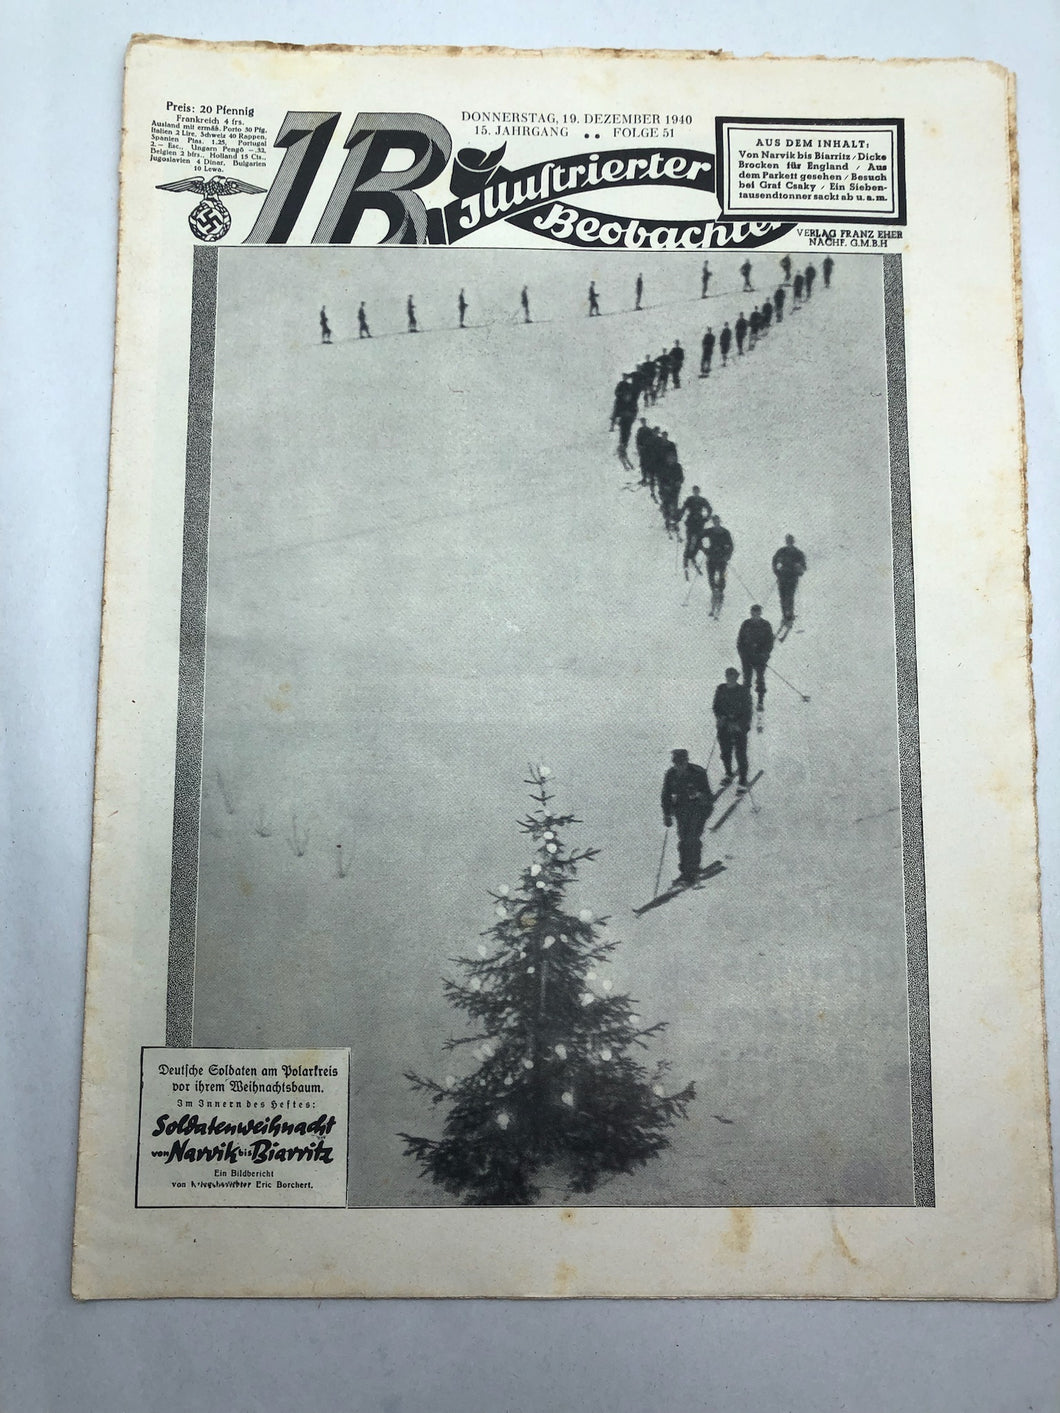 JB Juustrierter Beobachter NSDAP Magazine Original WW2 German - 19 December 1940